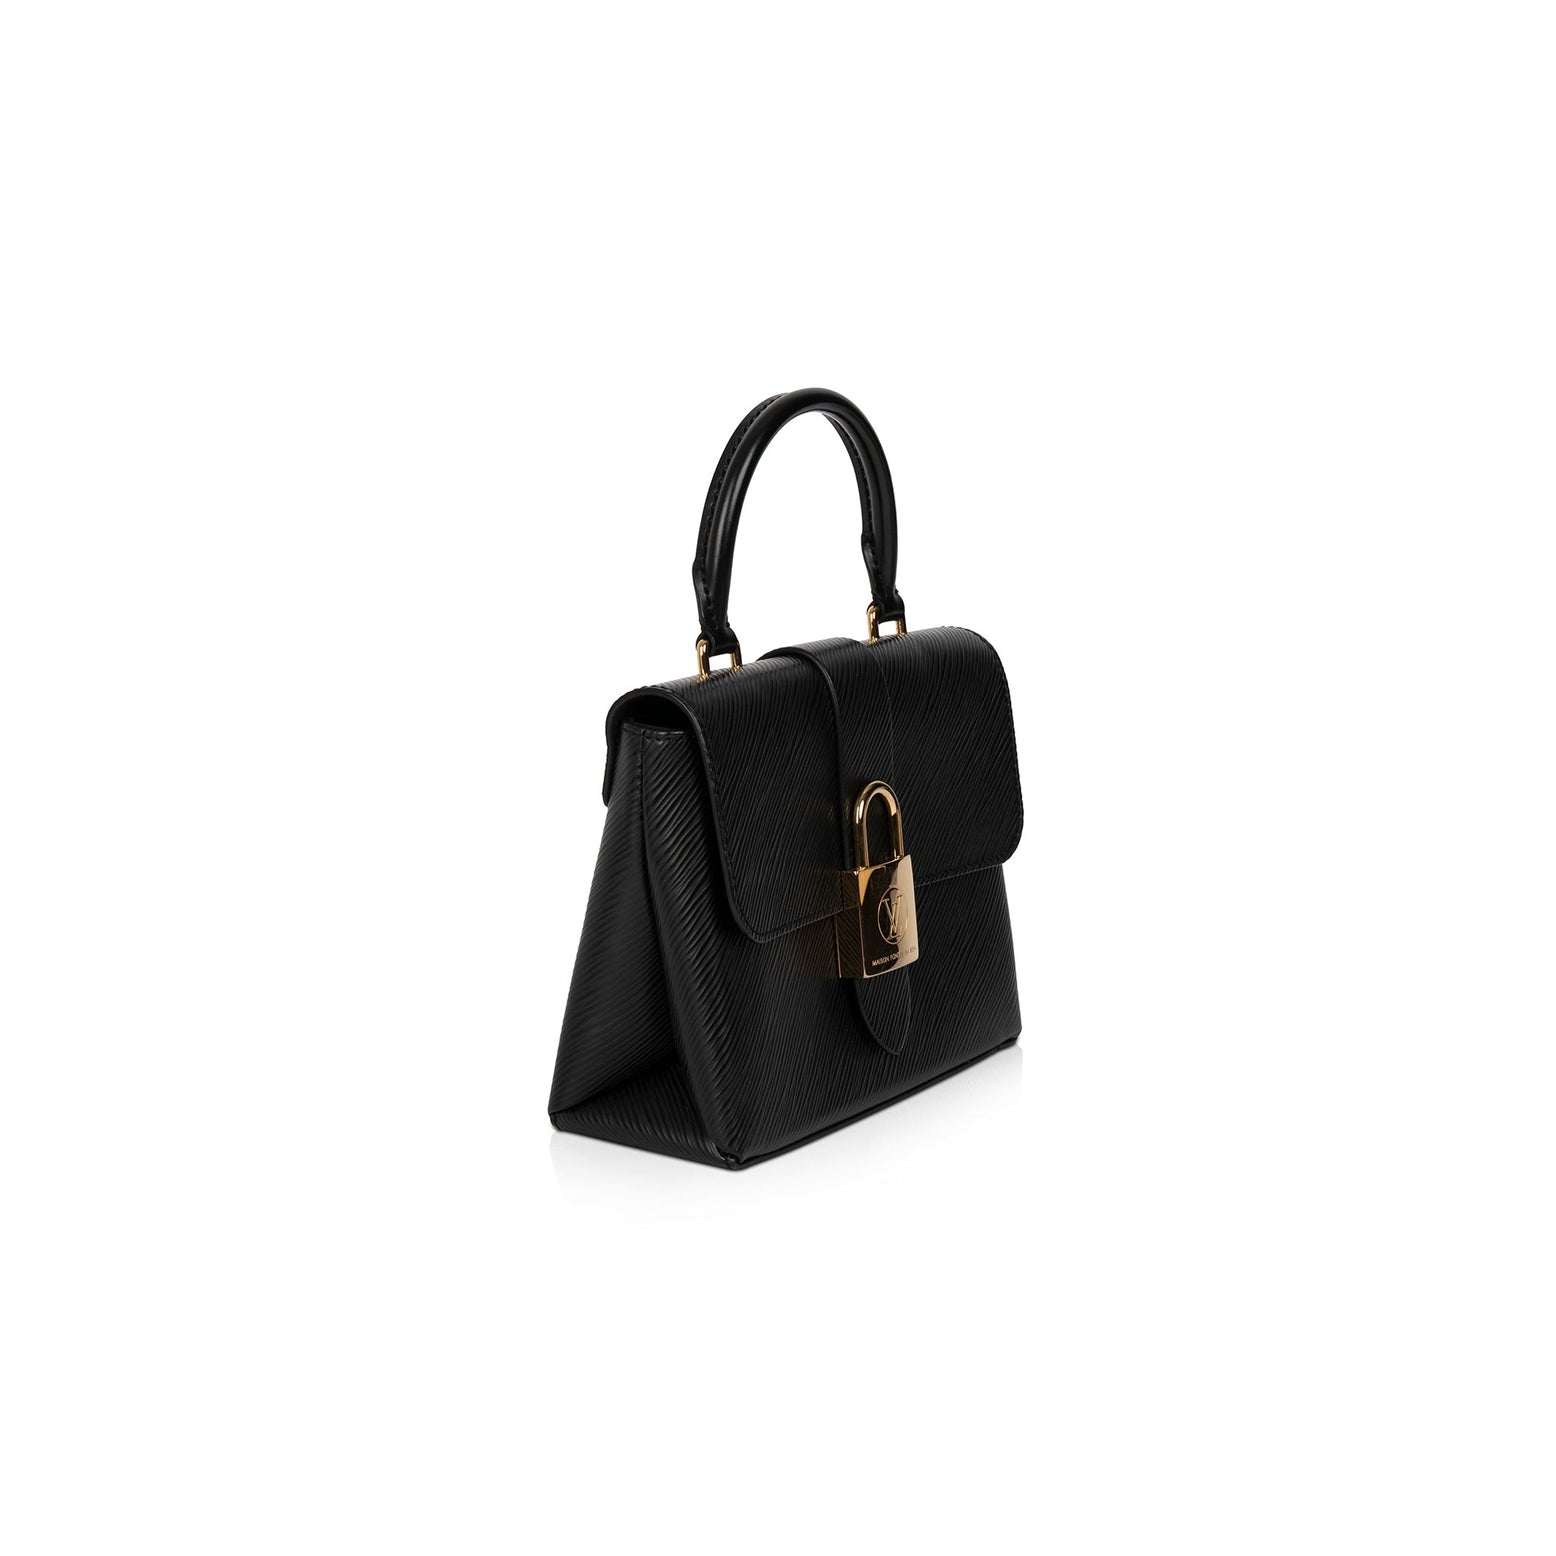 Louis+Vuitton+Marelle+Shoulder+Bag+Pink+Leather+Epi for sale online